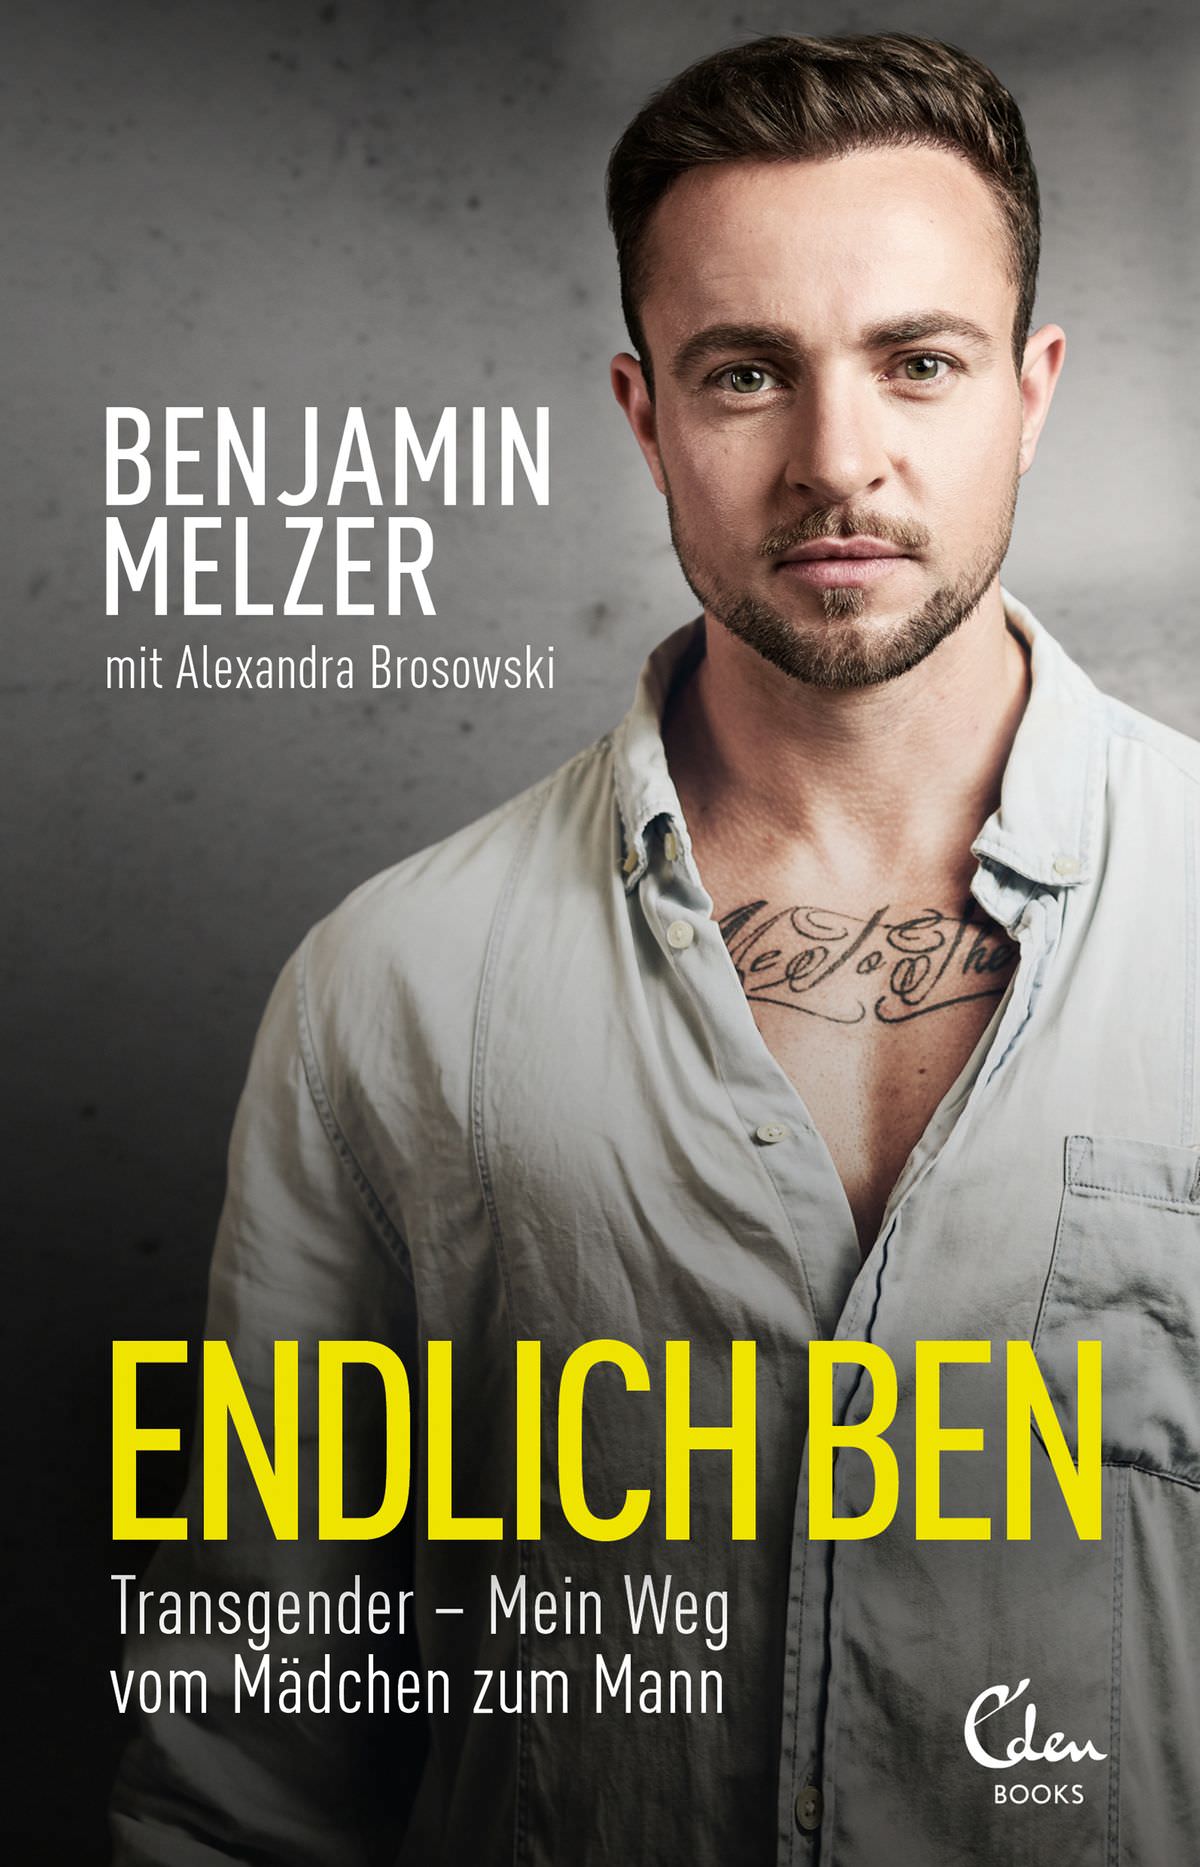 Buchcover: Benjamin Melzer: Endlich Ben